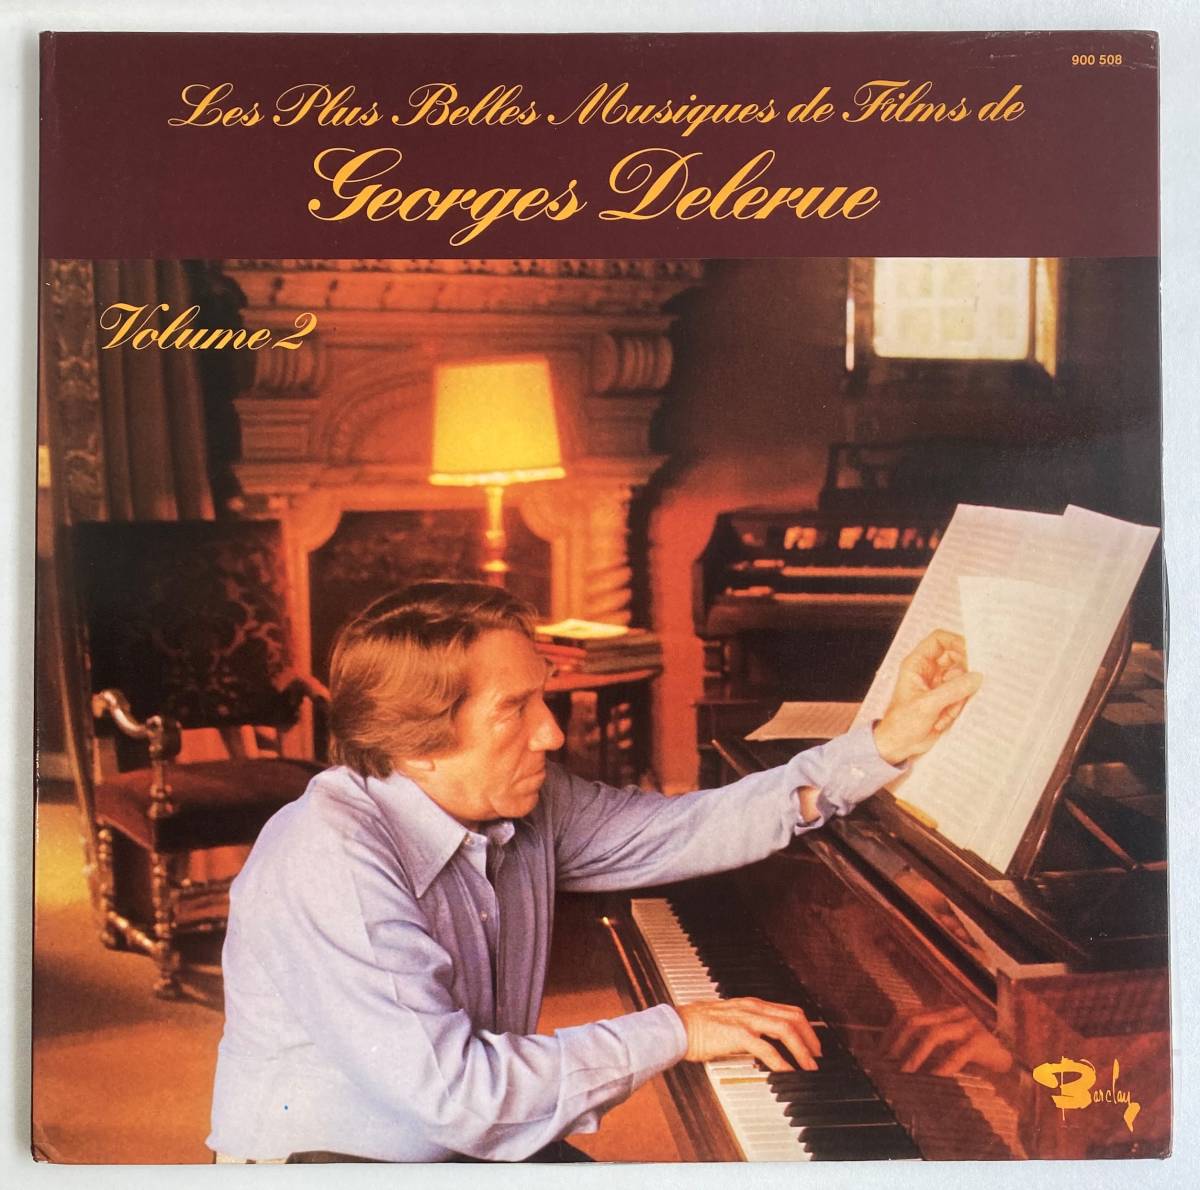 Les plus belles musiques de fils de Georges Delerue Vol.2 仏盤LP Barclay 900 508_画像1